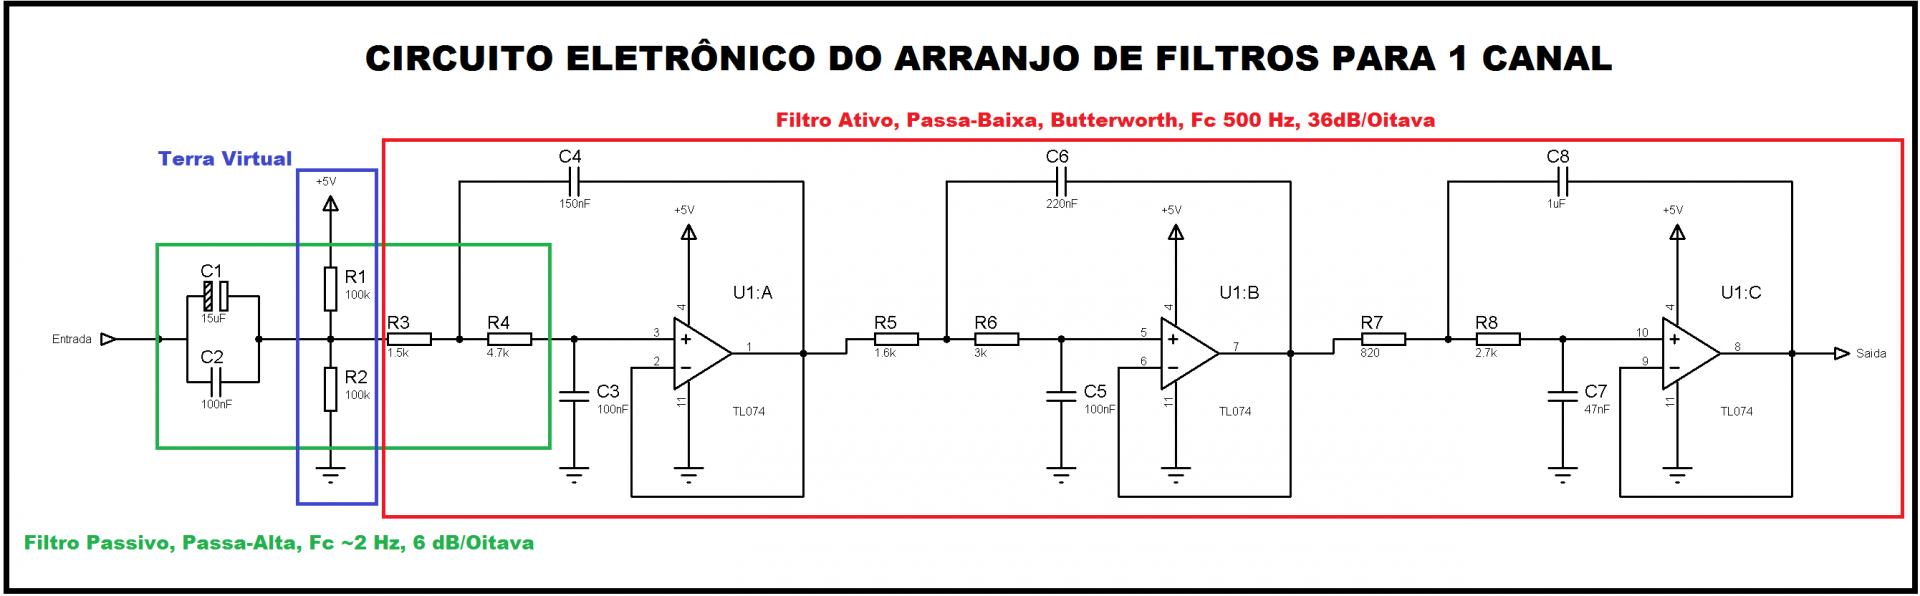 Anti Aliasing Filtro Passa Baixa